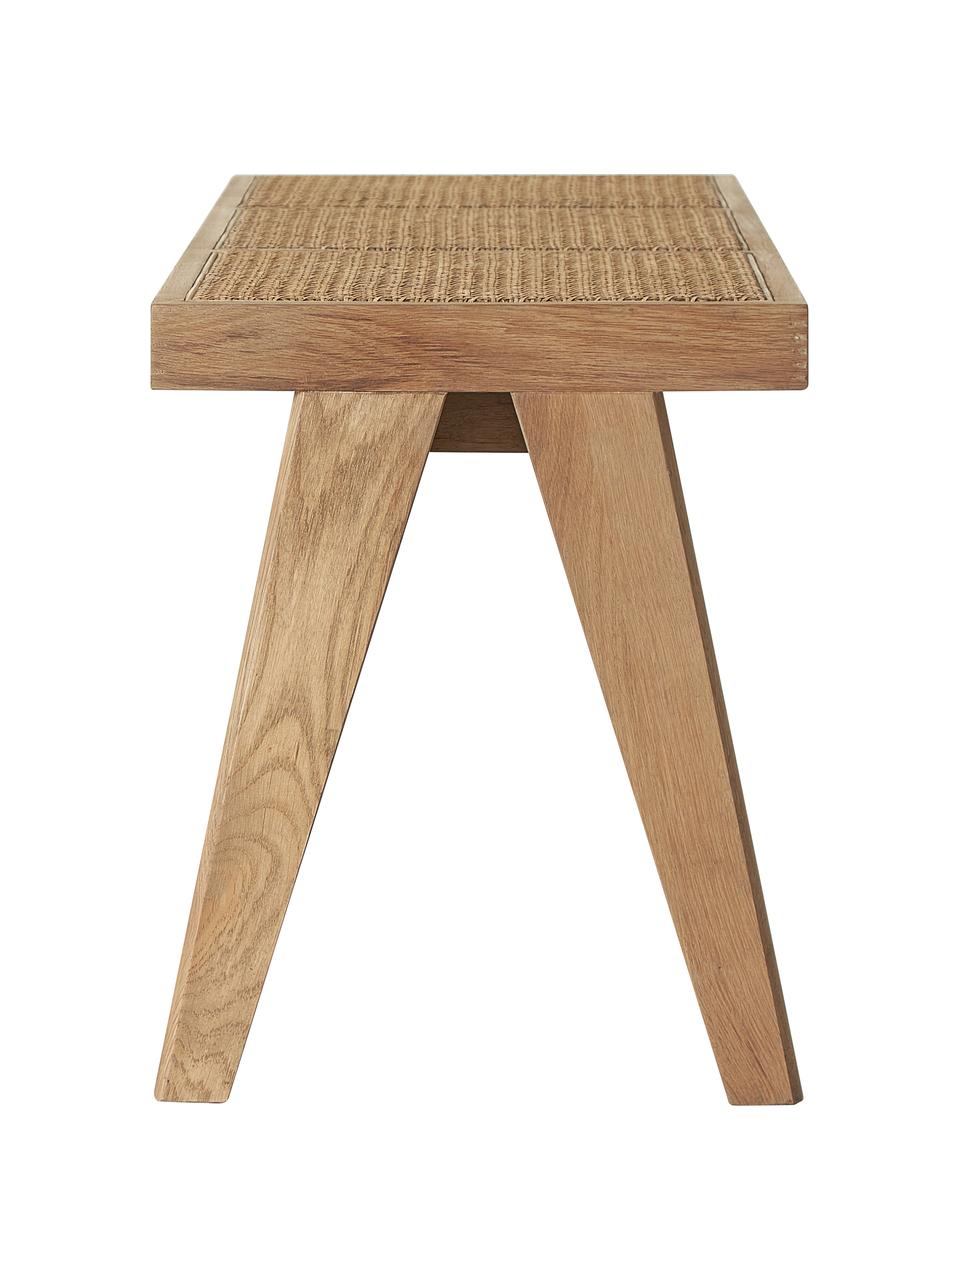 Sitzbank Sissi mit Wiener Geflecht, Gestell: Massives Eichenholz, Sitzfläche: Rattan, Helles Holz, B 110 x H 48 cm